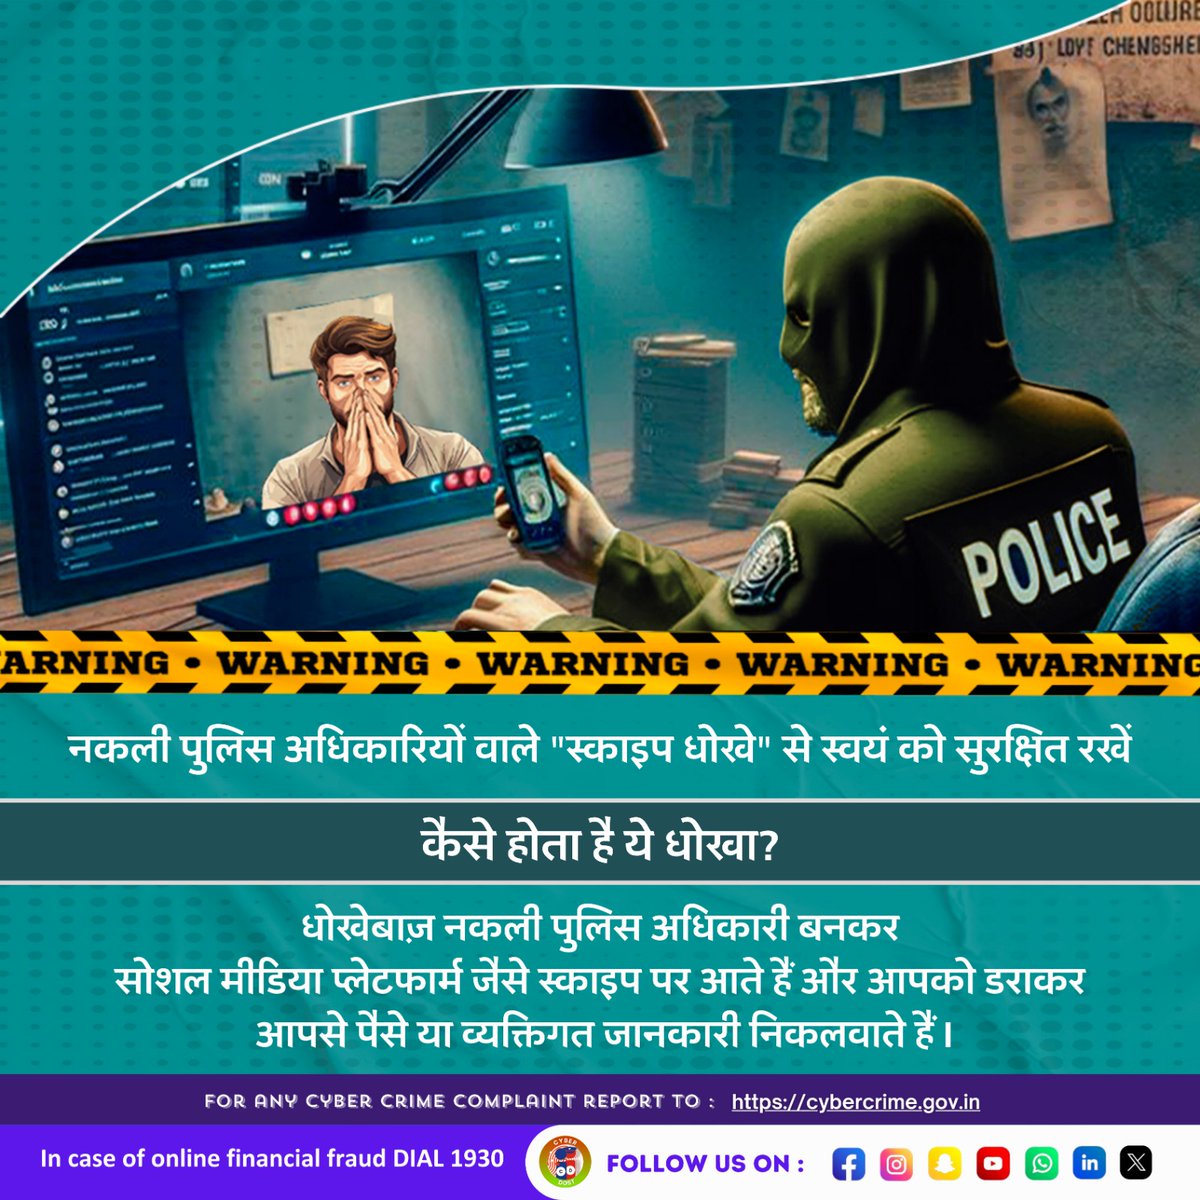 धोखेबाज़ नकली पुलिस अधिकारी बनकर सोशल मीडिया प्लेटफार्म जैसे स्काइप पर आते हैं और आपको डराकर आपसे पैसे या व्यक्तिगत जानकारी निकलवाते हैं. नकली पुलिस अधिकारियों वाले 'स्काइप धोखे' से स्वयं को सुरक्षित रखें I #I4C #MHA #Cyberdost #Cybercrime #Cybersecurity #Stayalert #News